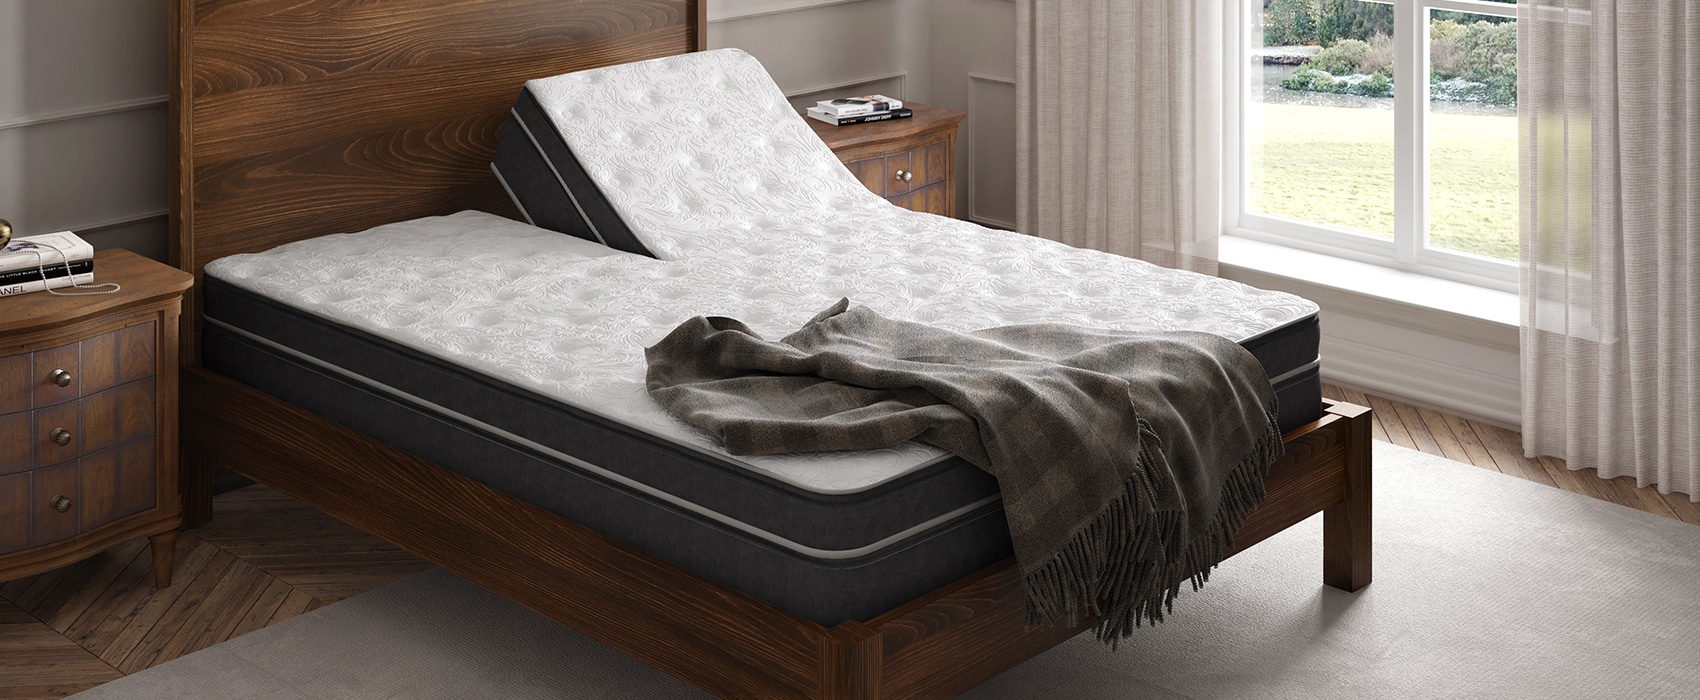 instant comfort air mattress